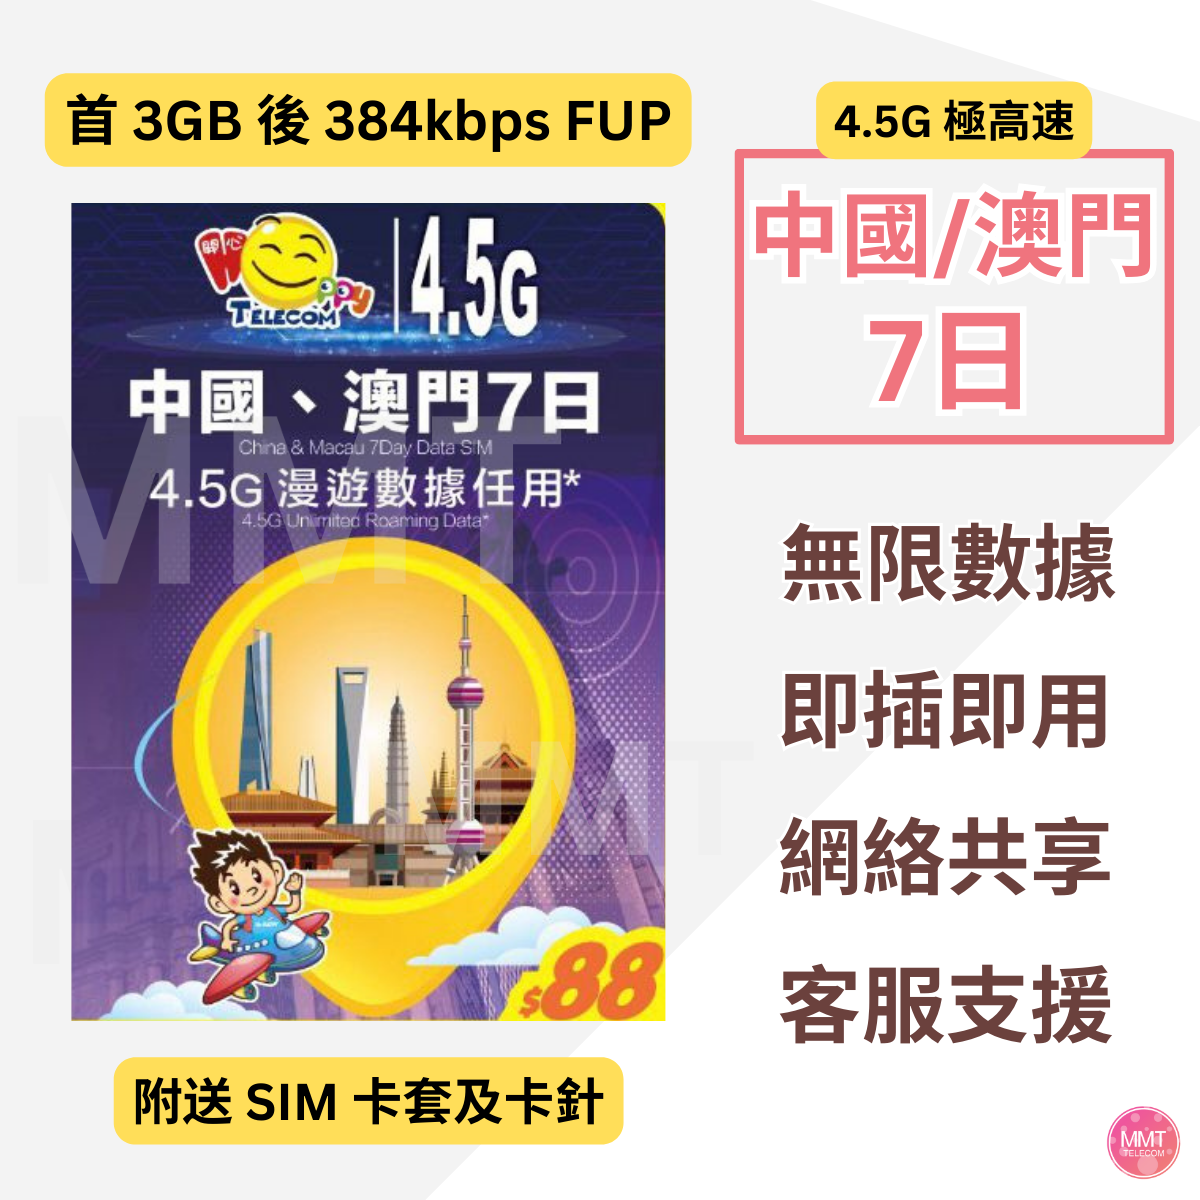 中國內地/大陸、澳門【7日 3GB FUP】4.5G高速數據上網卡 電話卡 旅行卡 數據卡 Data Sim咭(可連接各大社交平台及香港網站)